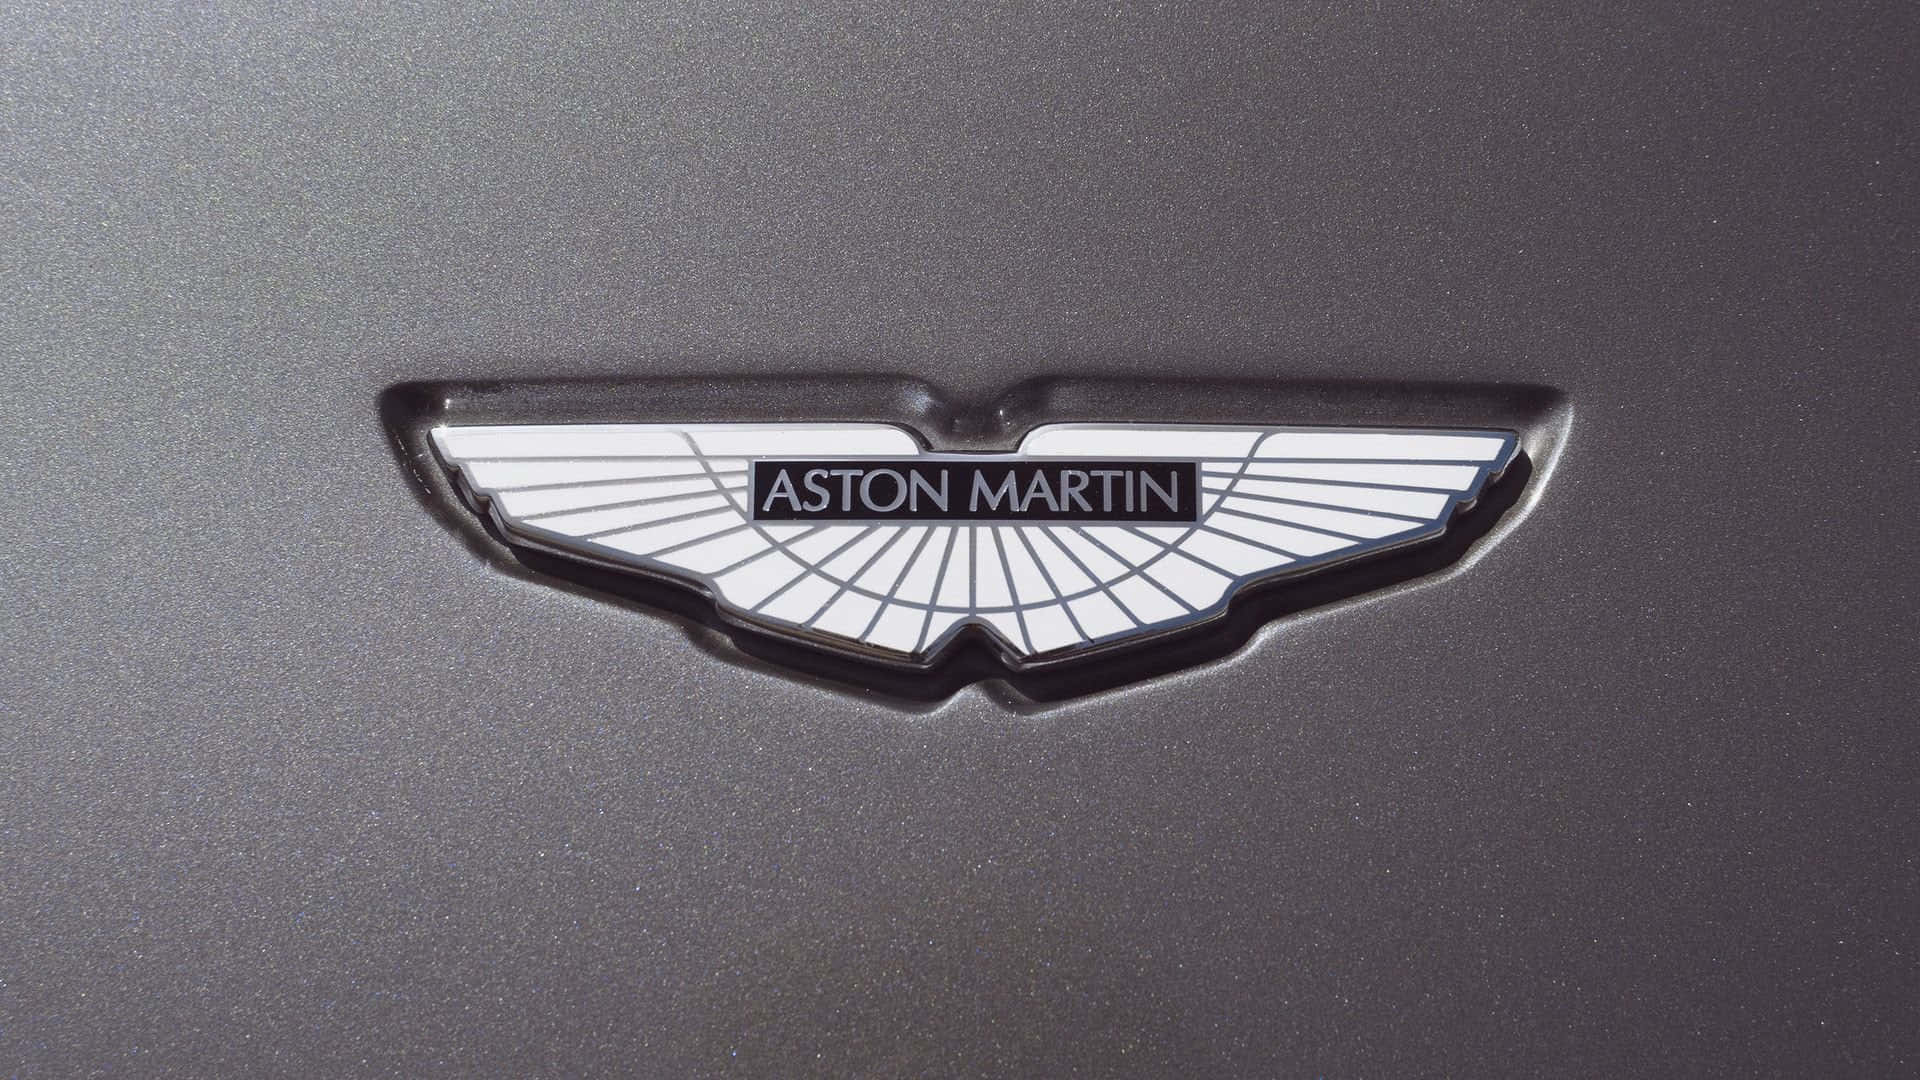 Prontoper Percorrere La Strada A Bordo Di Una Aston Martin